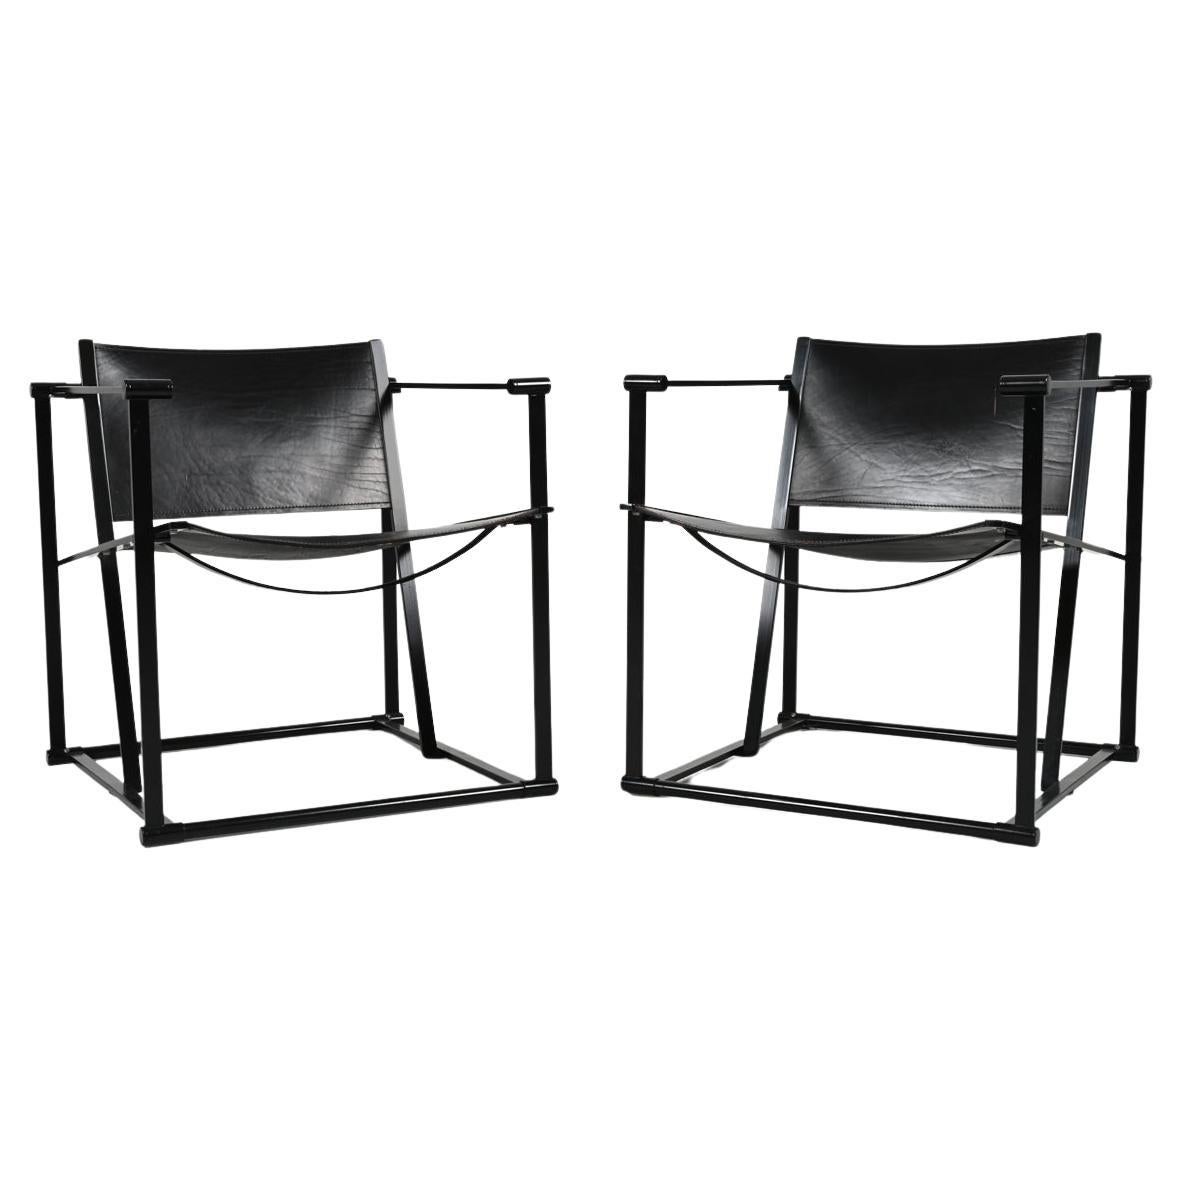 Pair of Radboud Van Beekum for Pastoe FM62 Cube Chairs; Black Leather & Steel